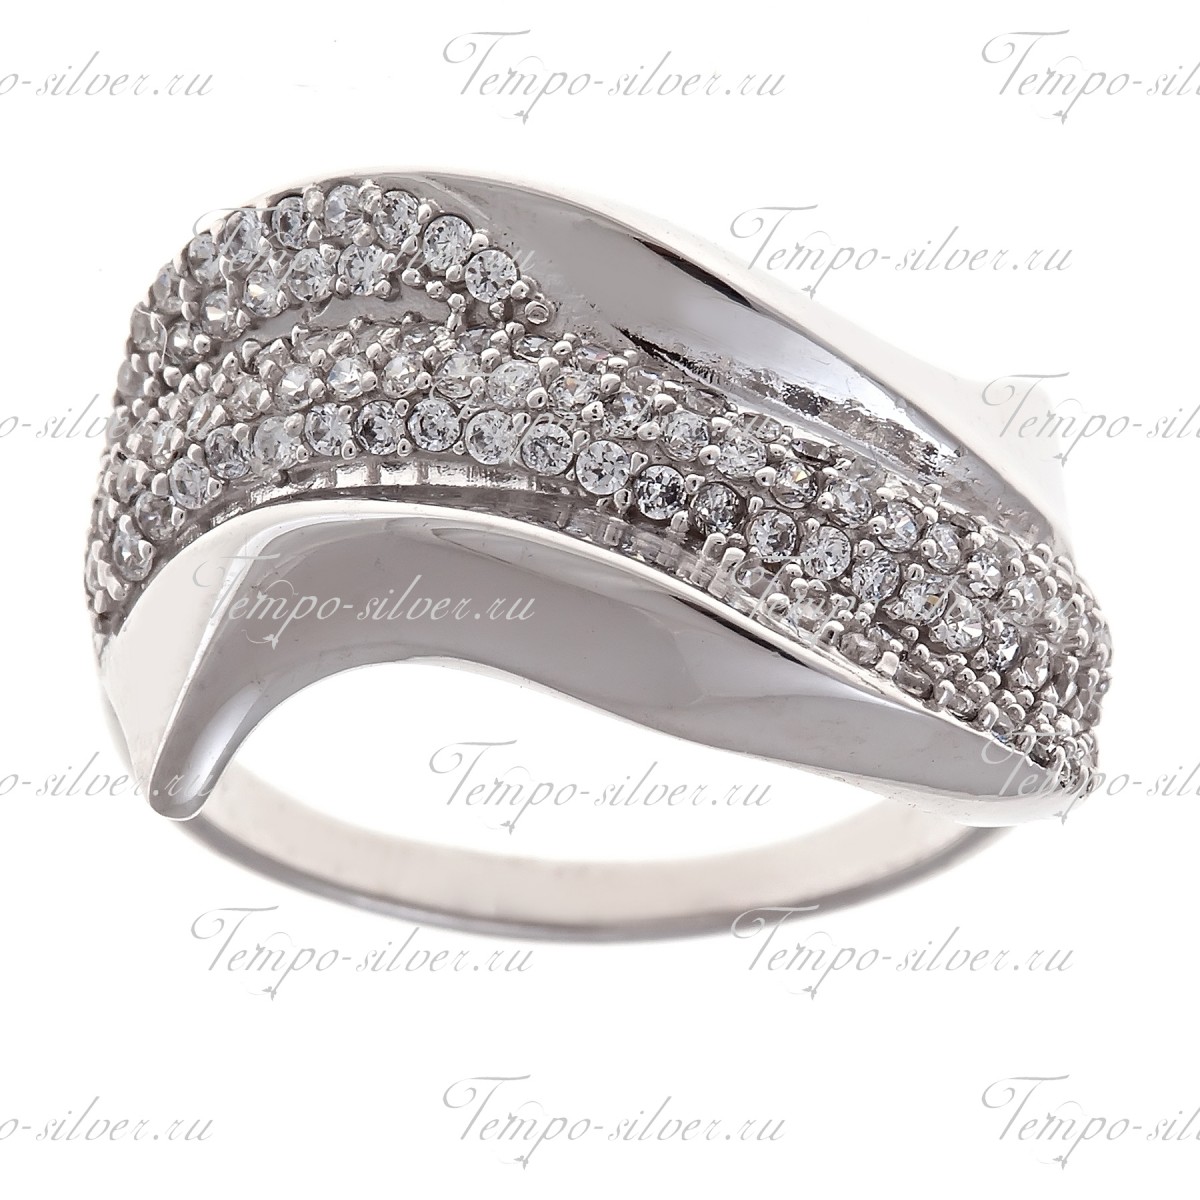 Кольцо из серебра несимметричной формы с дорожкой из белых камней по центру цена